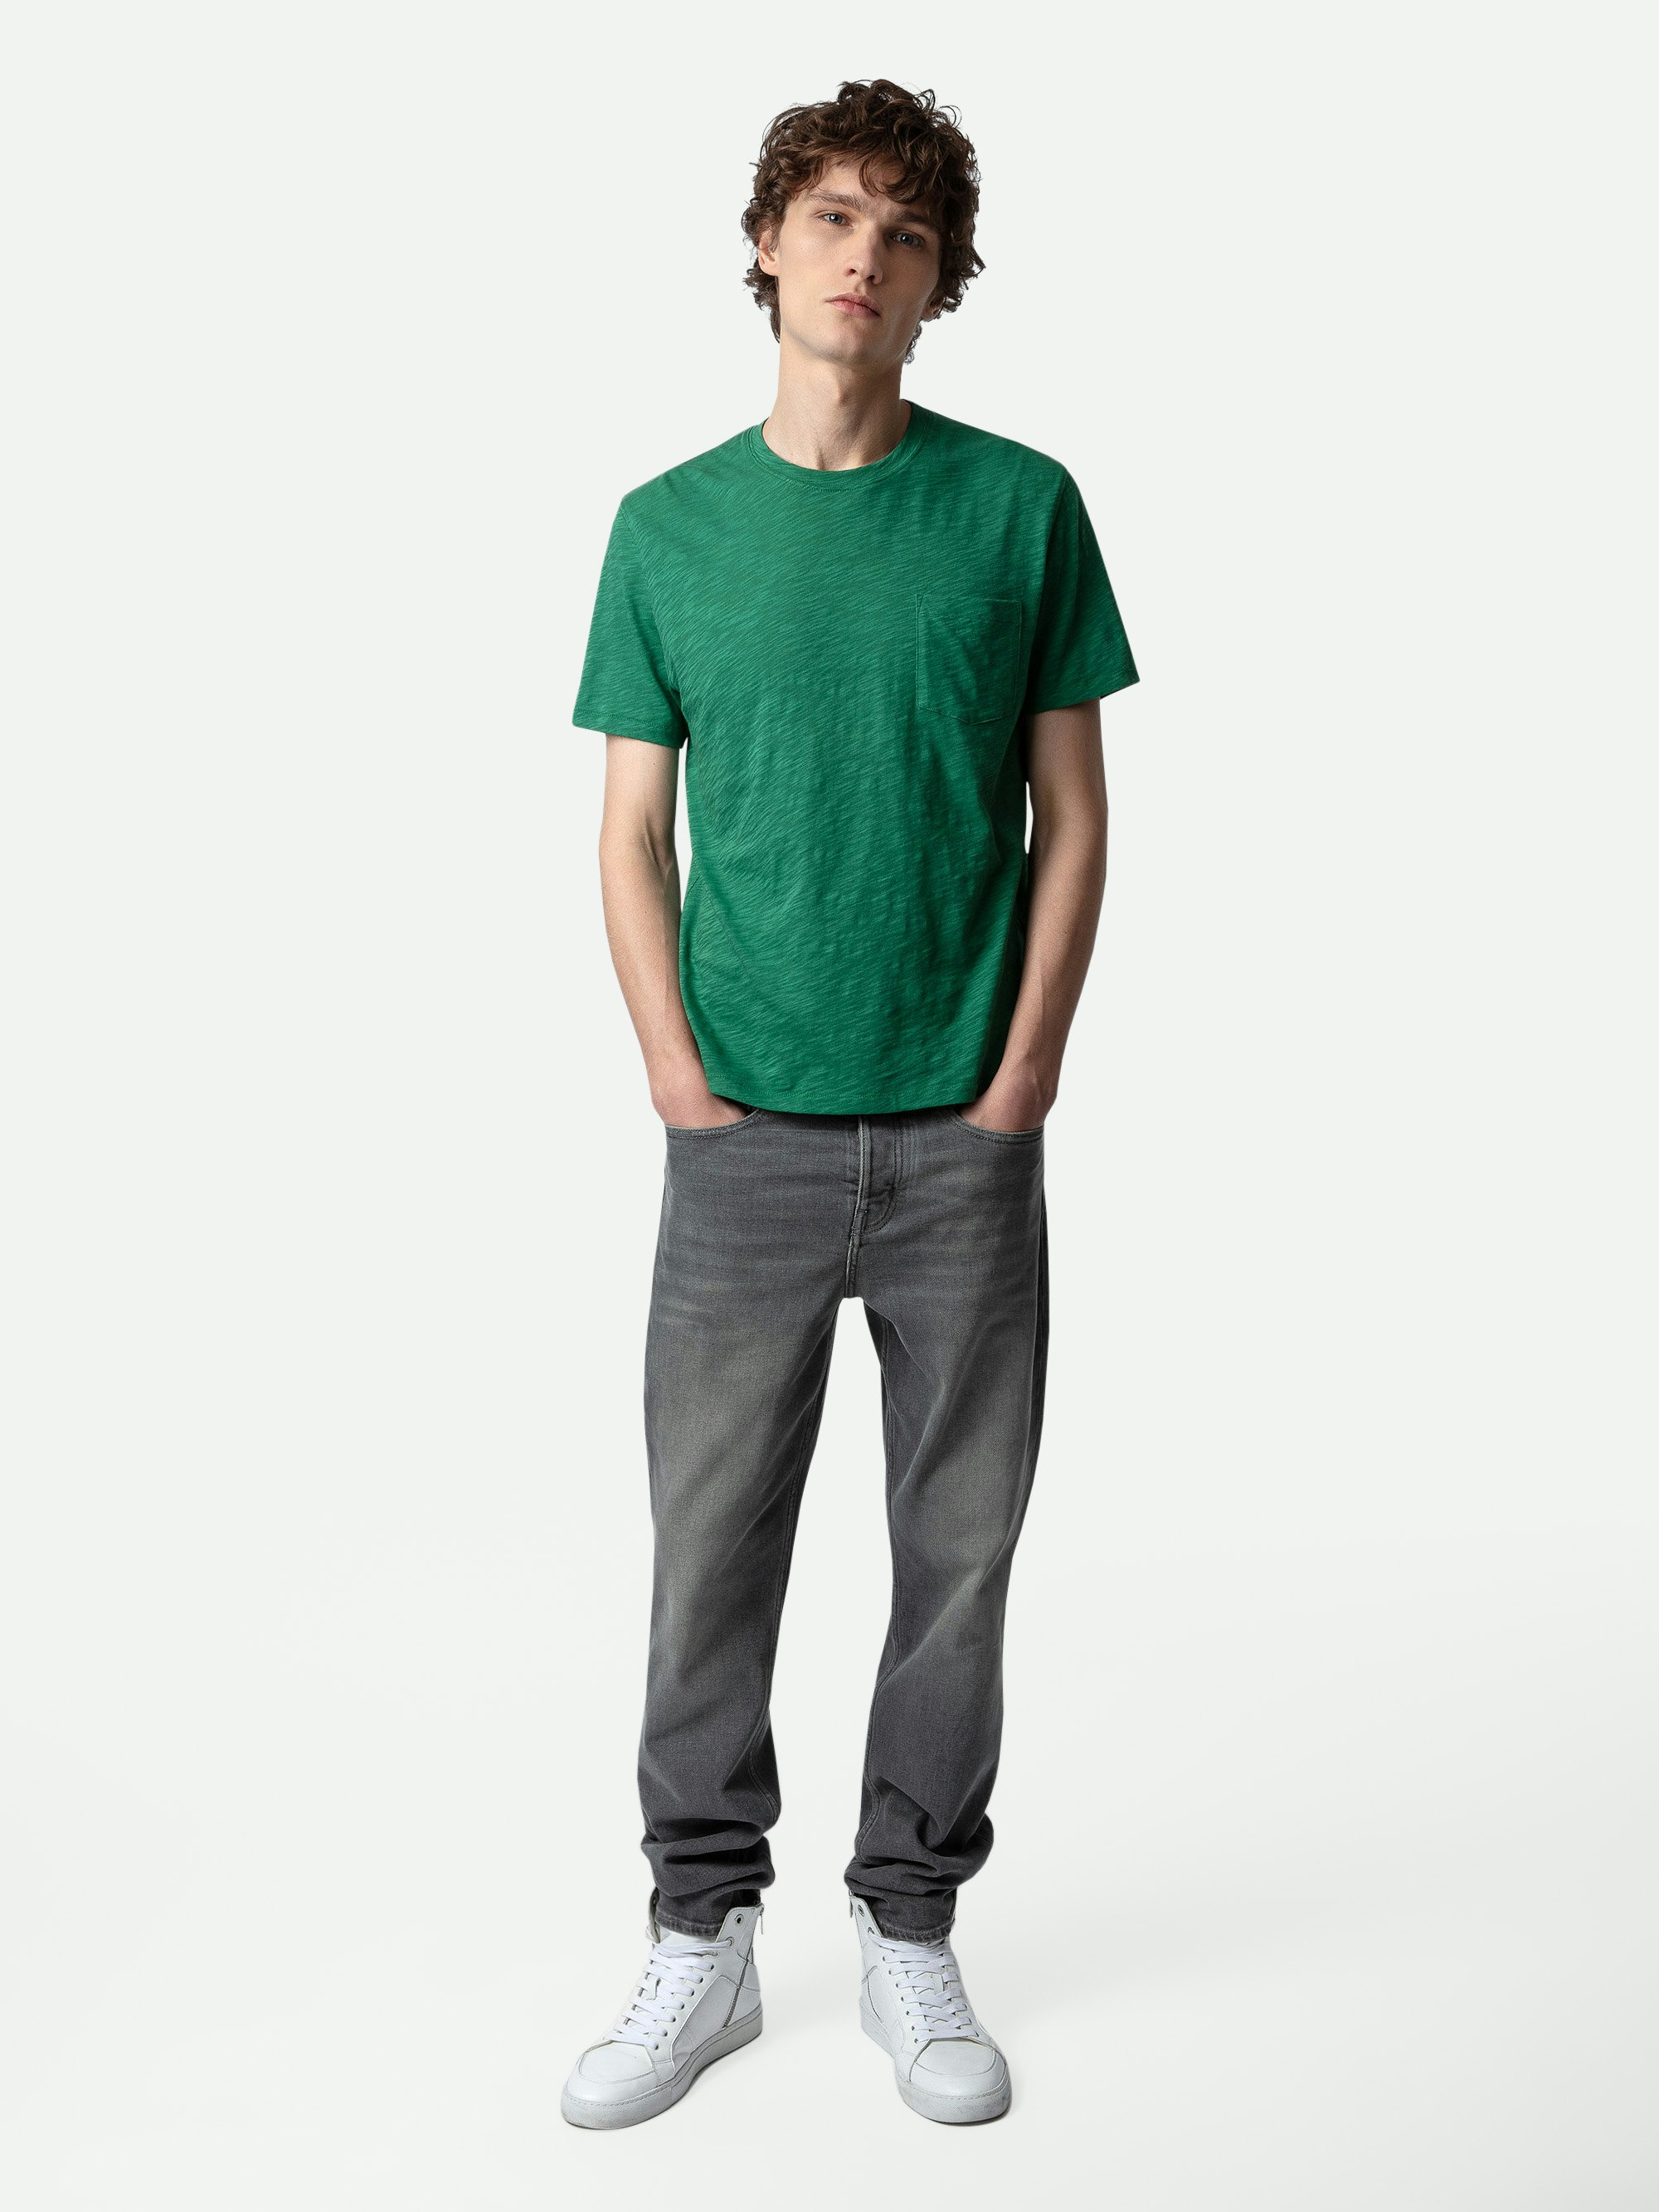 T-shirt Stockholm fiammato - T-shirt in cotone fiammato verde a maniche corte con tasca e motivo Skull Block sul retro.